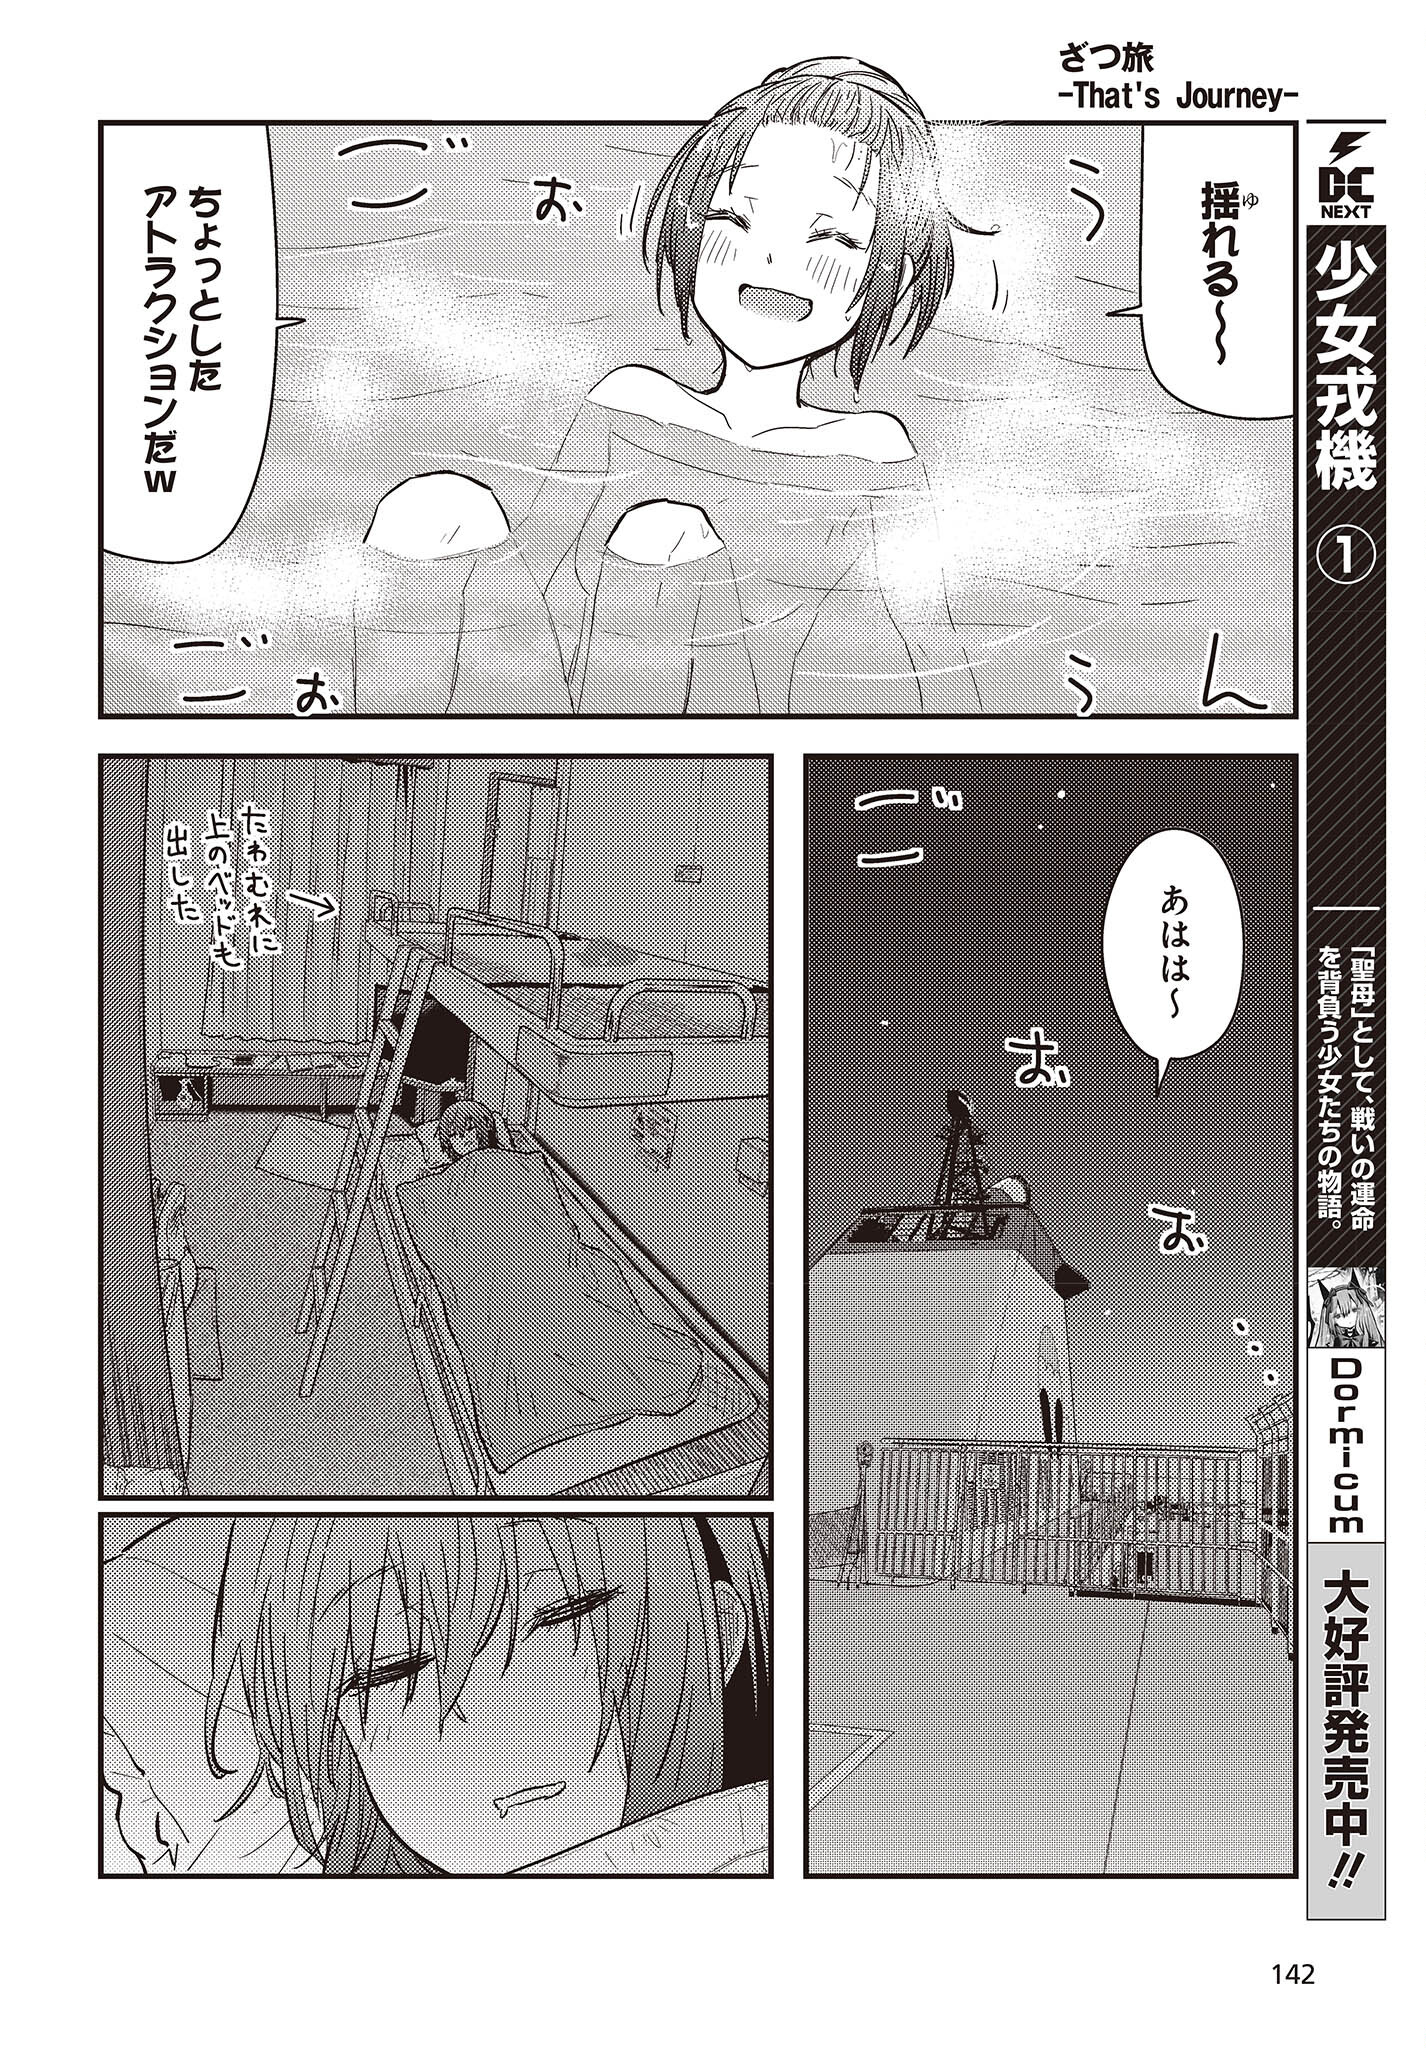 ざつ旅-That's Journey- 第26.1話 - Page 18